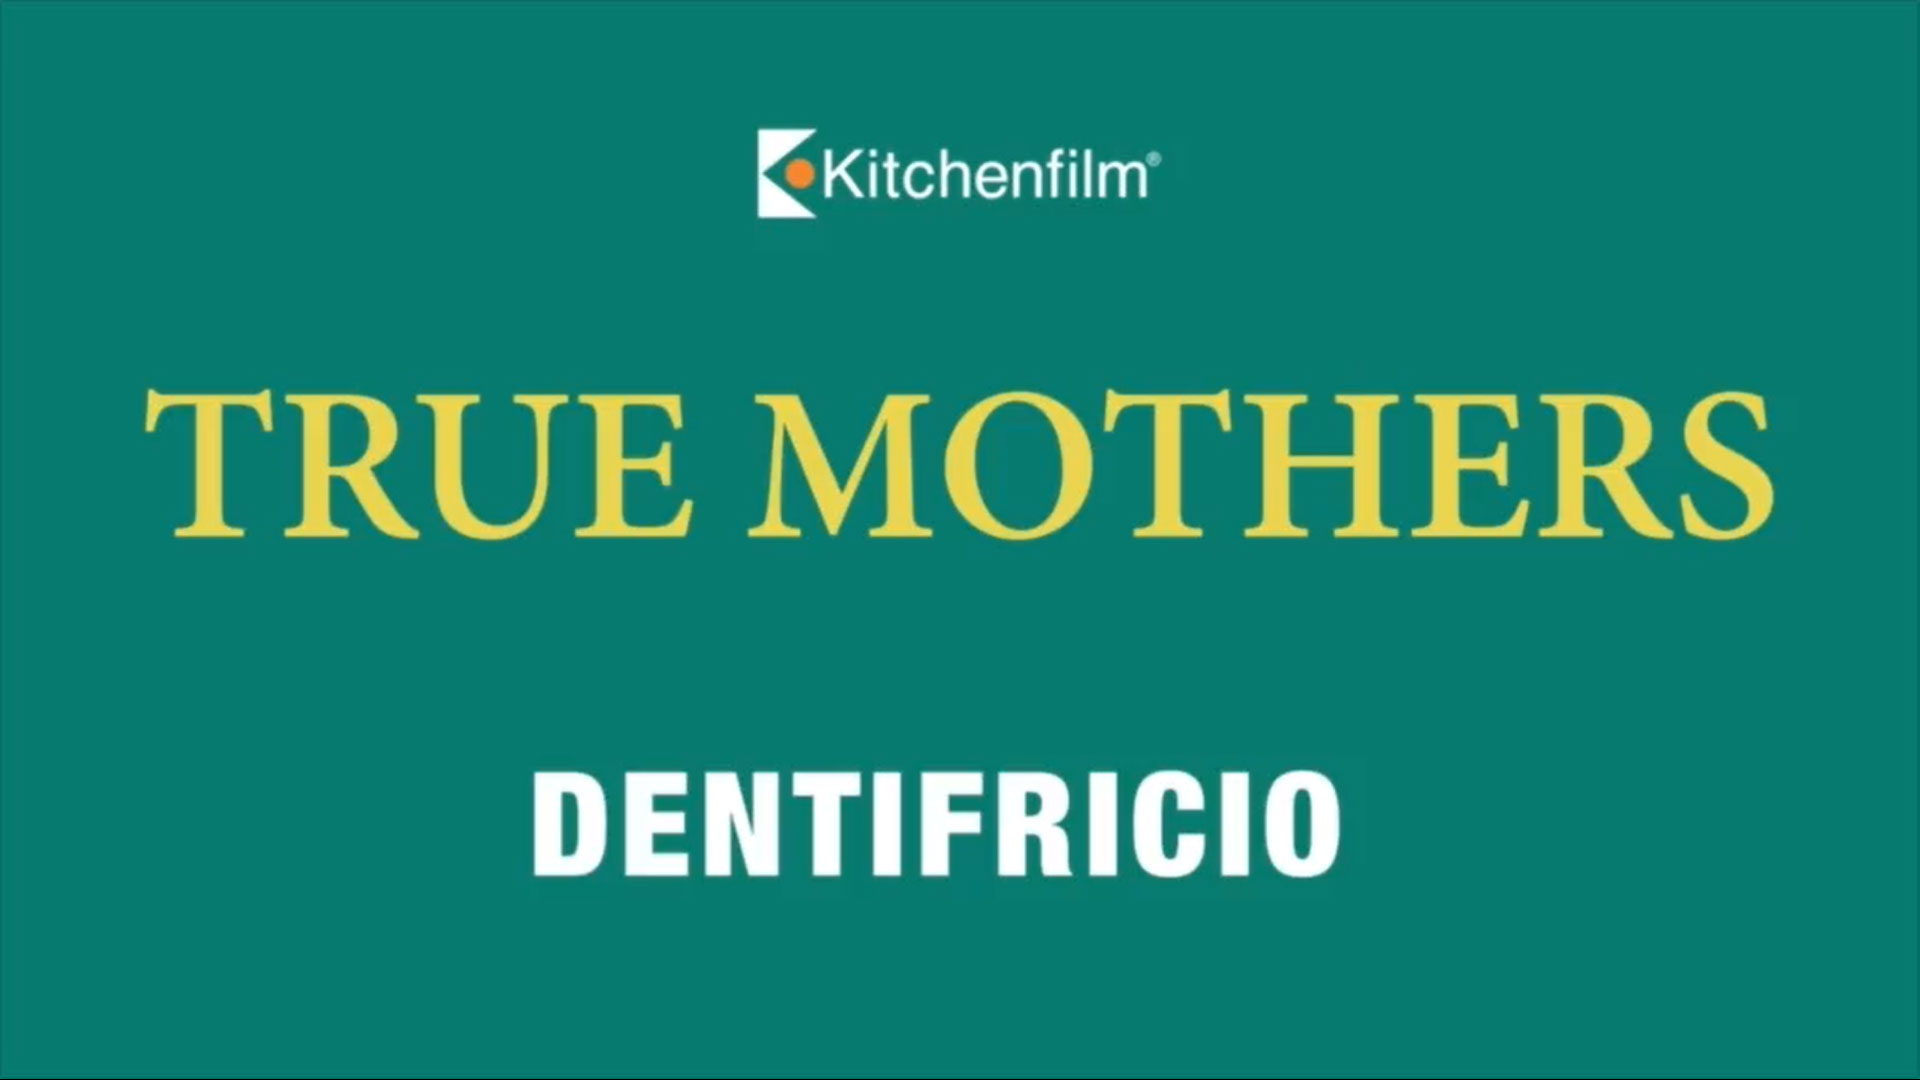 Dentifricio: Clip dal film True Mothers di Naomi Kawase